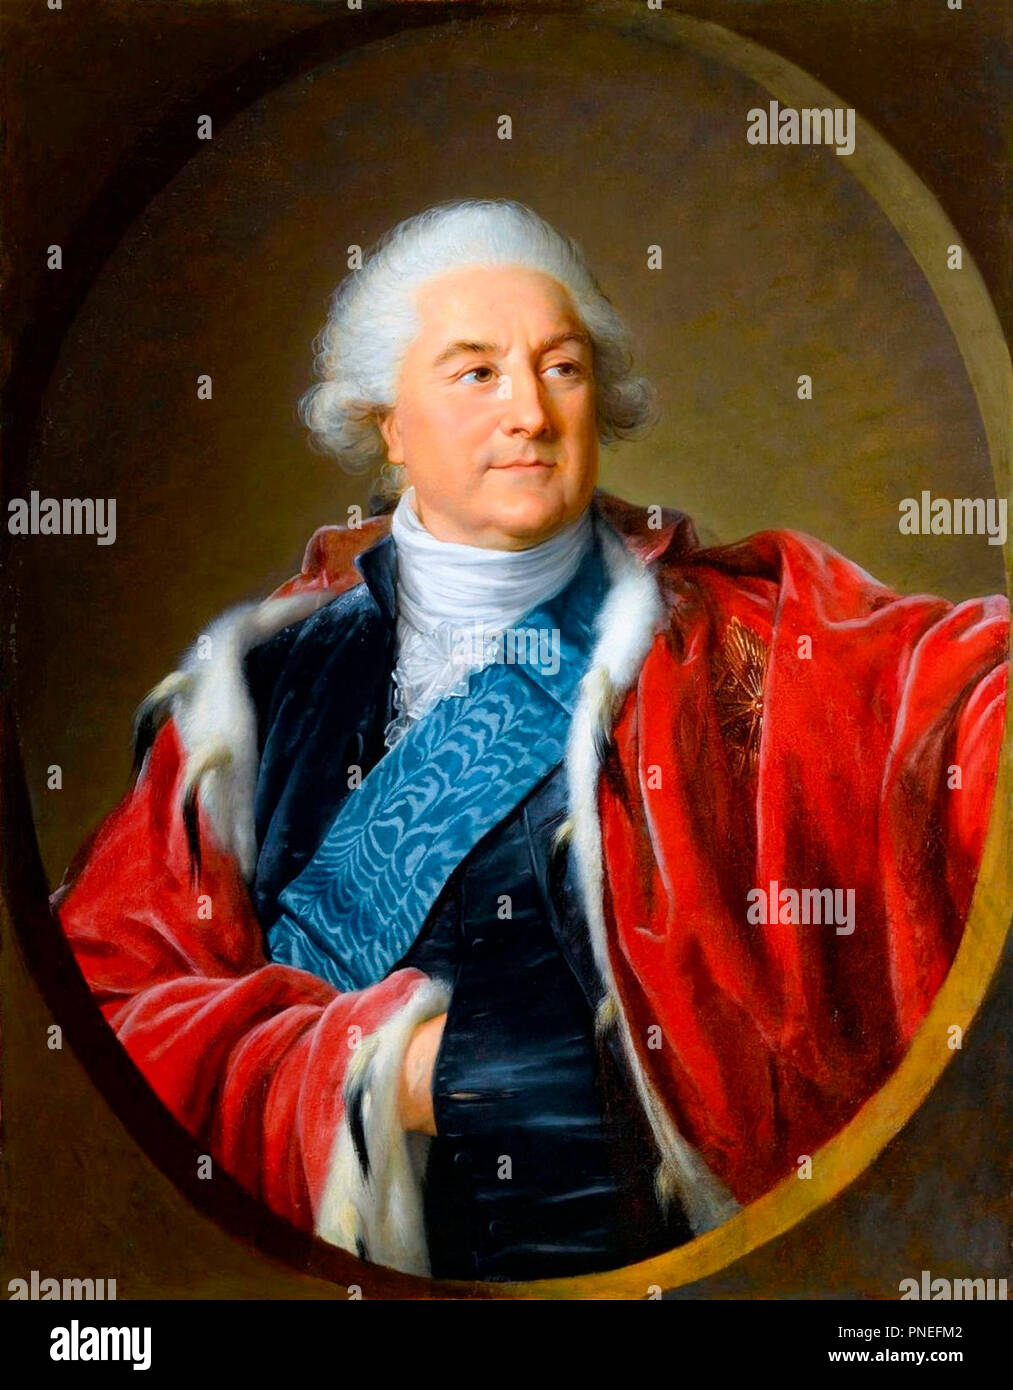 Portrait de Stanislas Auguste Poniatowski, roi de Pologne. Louise Elisabeth Vigee Le Brun, vers 1797 Banque D'Images